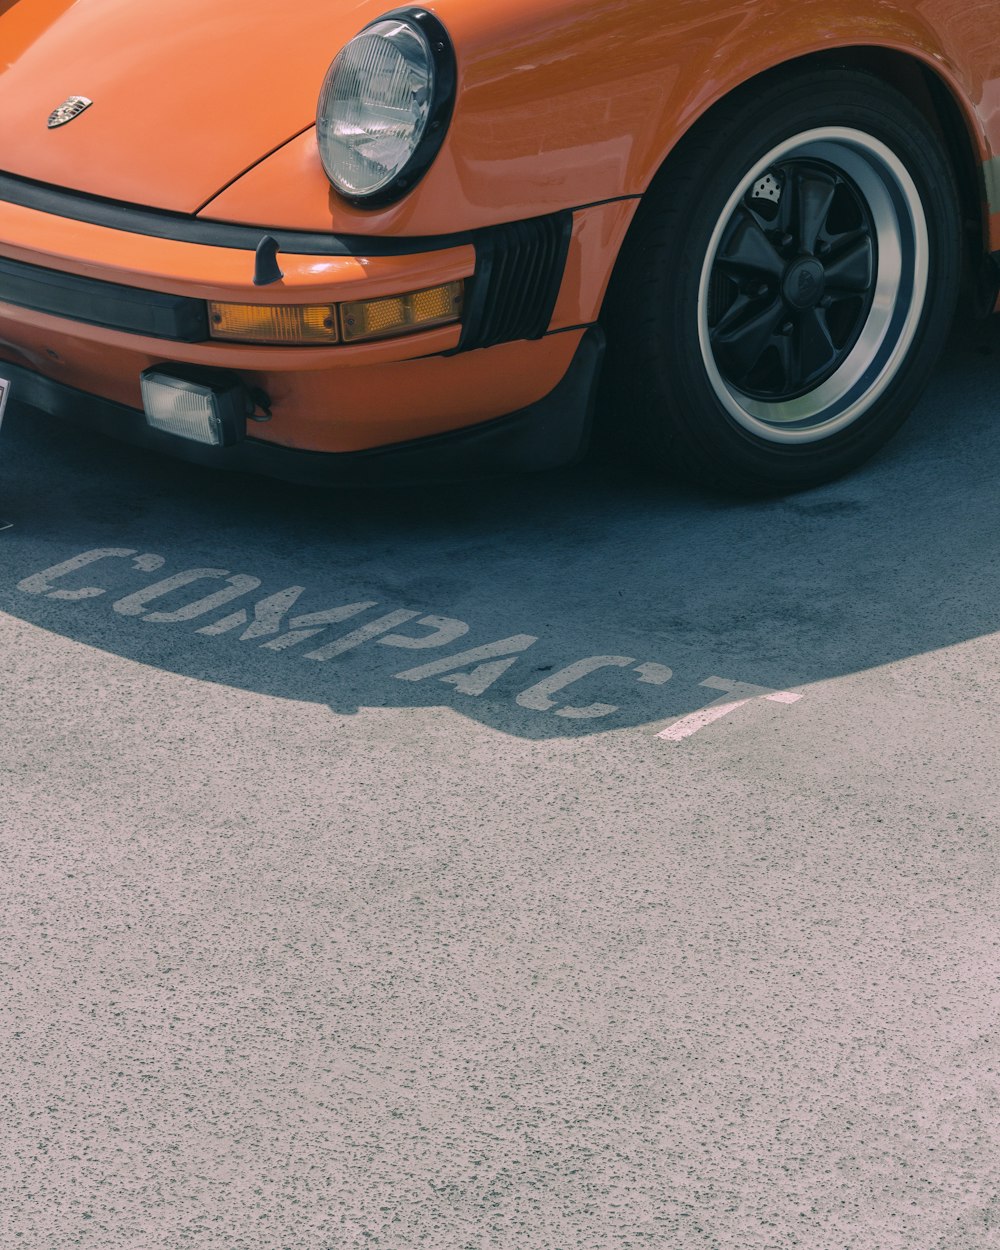 orange Porsche vehicle on Compact parking lot